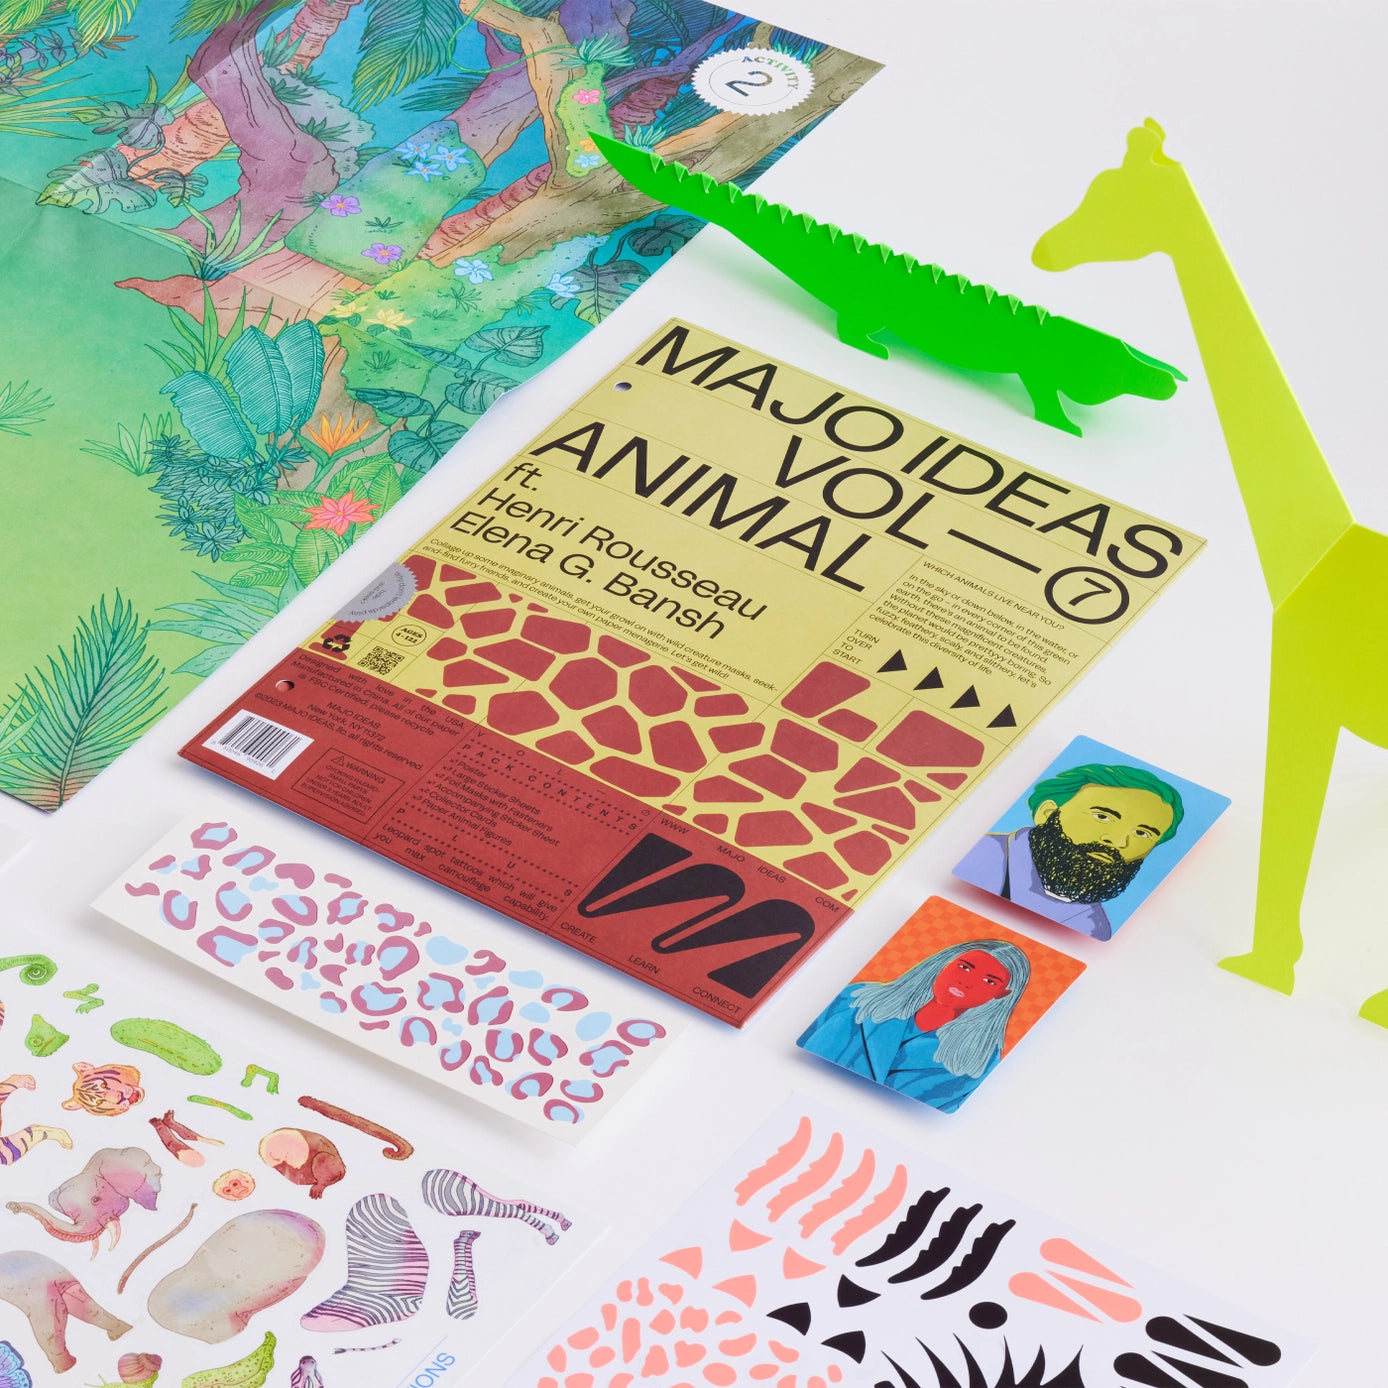 Animal Sticker Based Art Pack - Volume 7